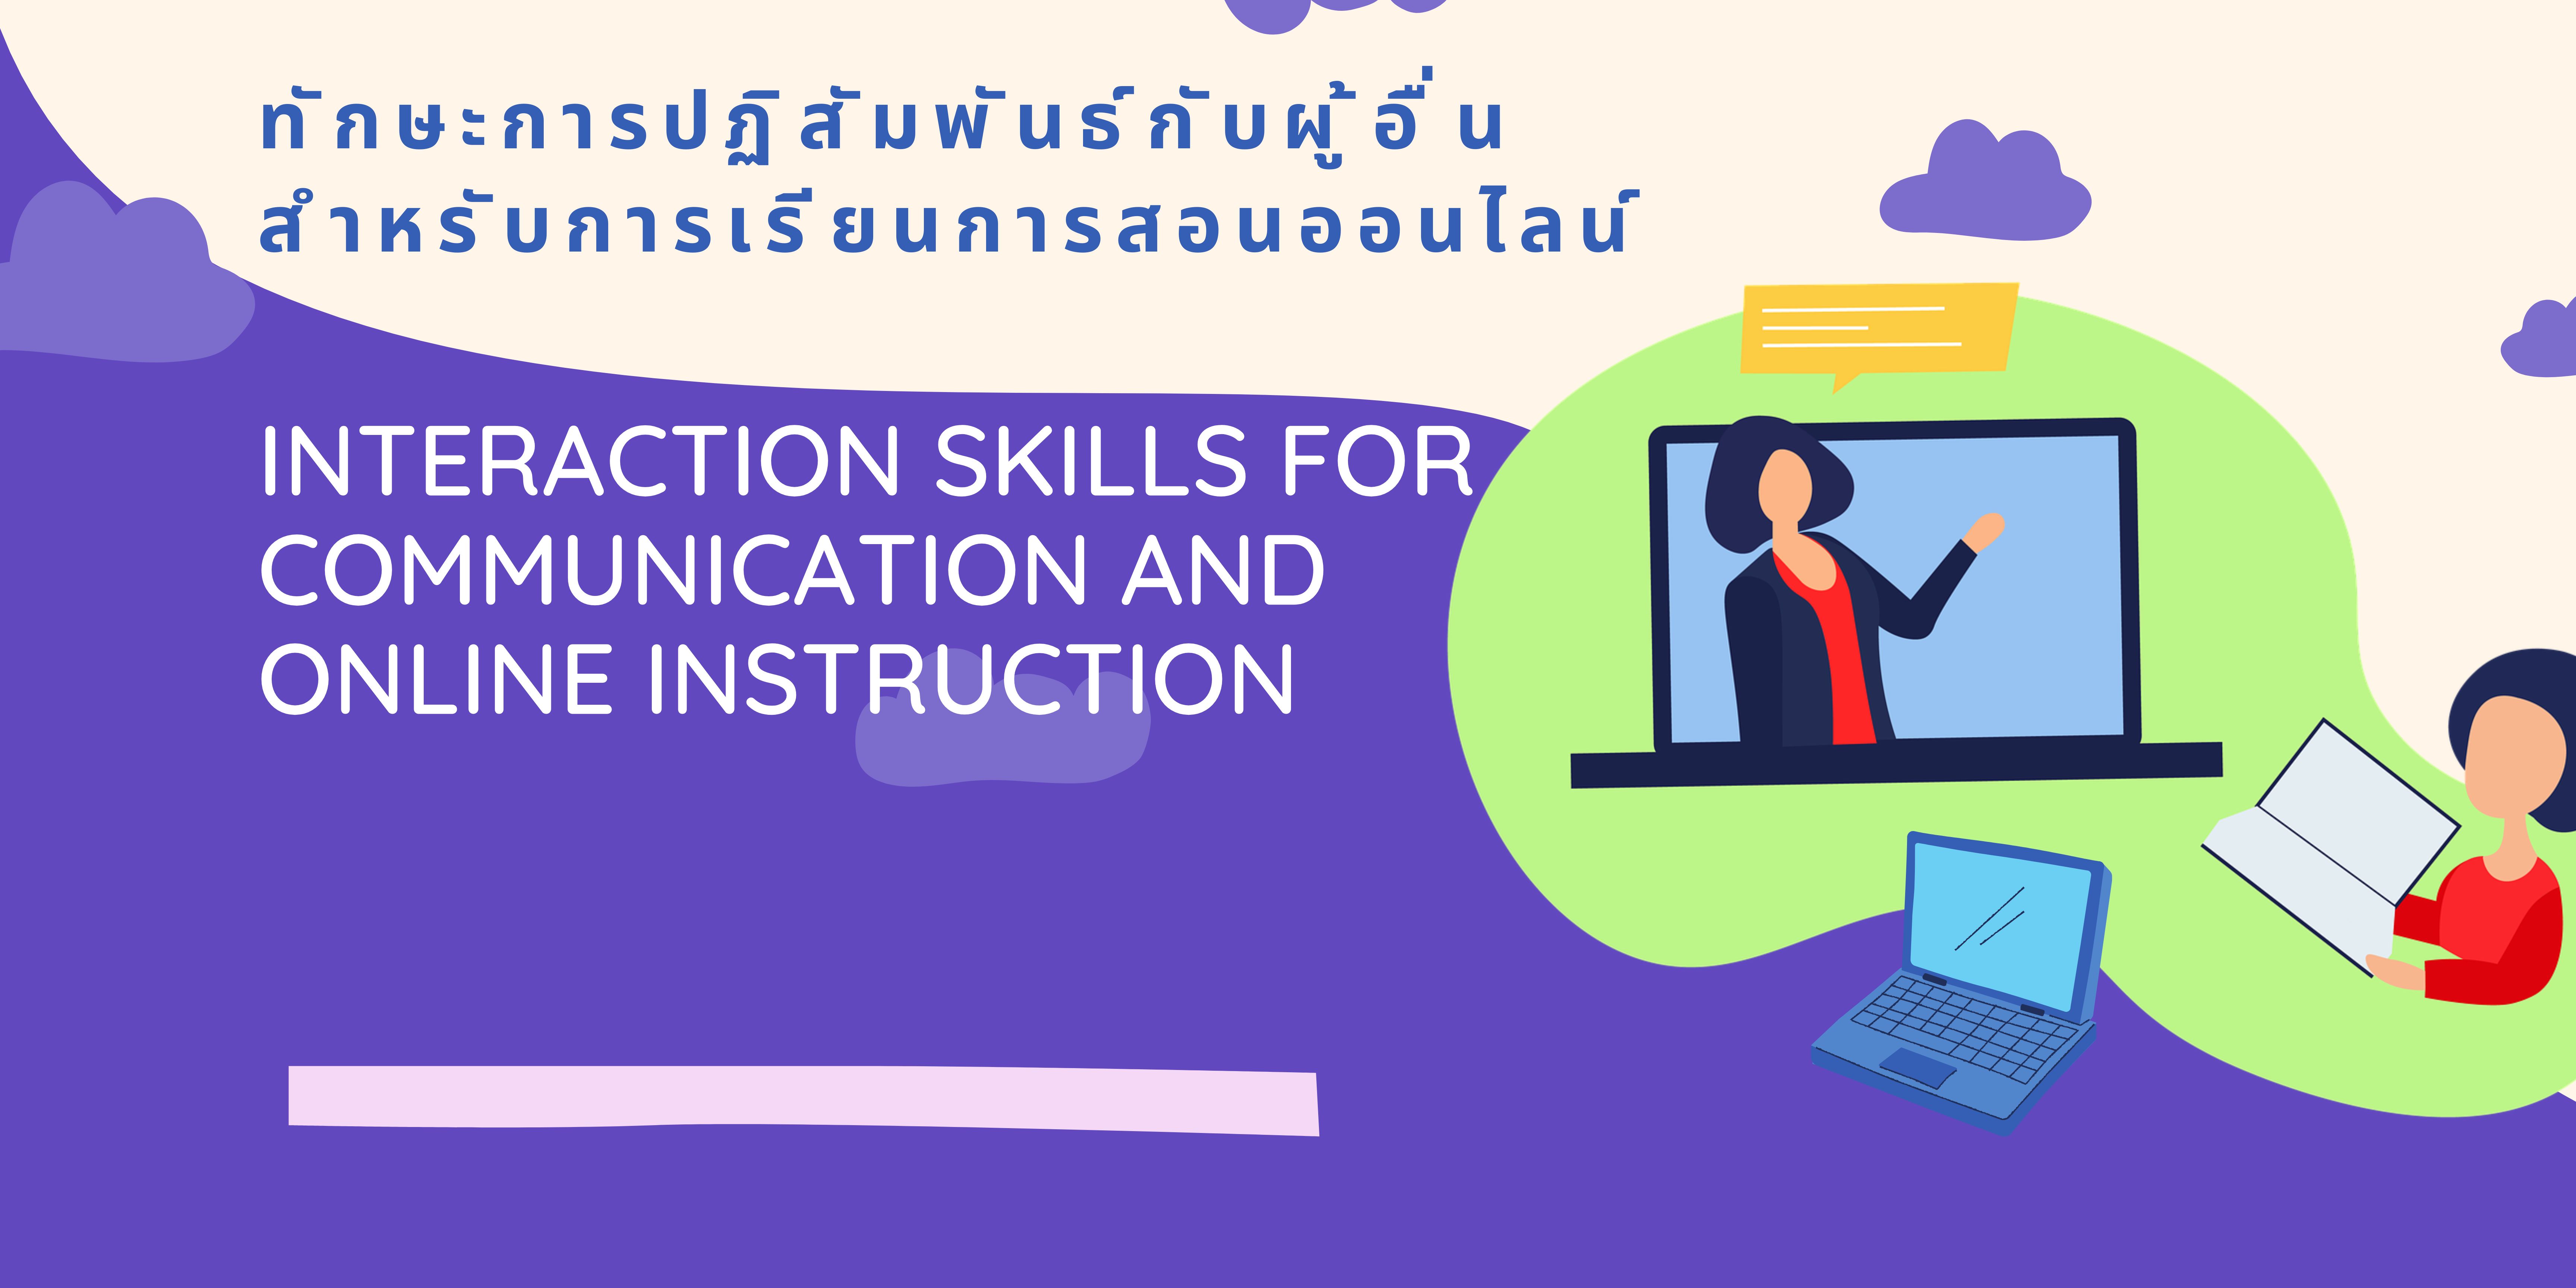 ทักษะการปฏิสัมพันธ์เพื่อการสื่อสารและการเรียนการสอนออนไลน์ (Interaction Skills for Communication and Online Instruction) EDU002